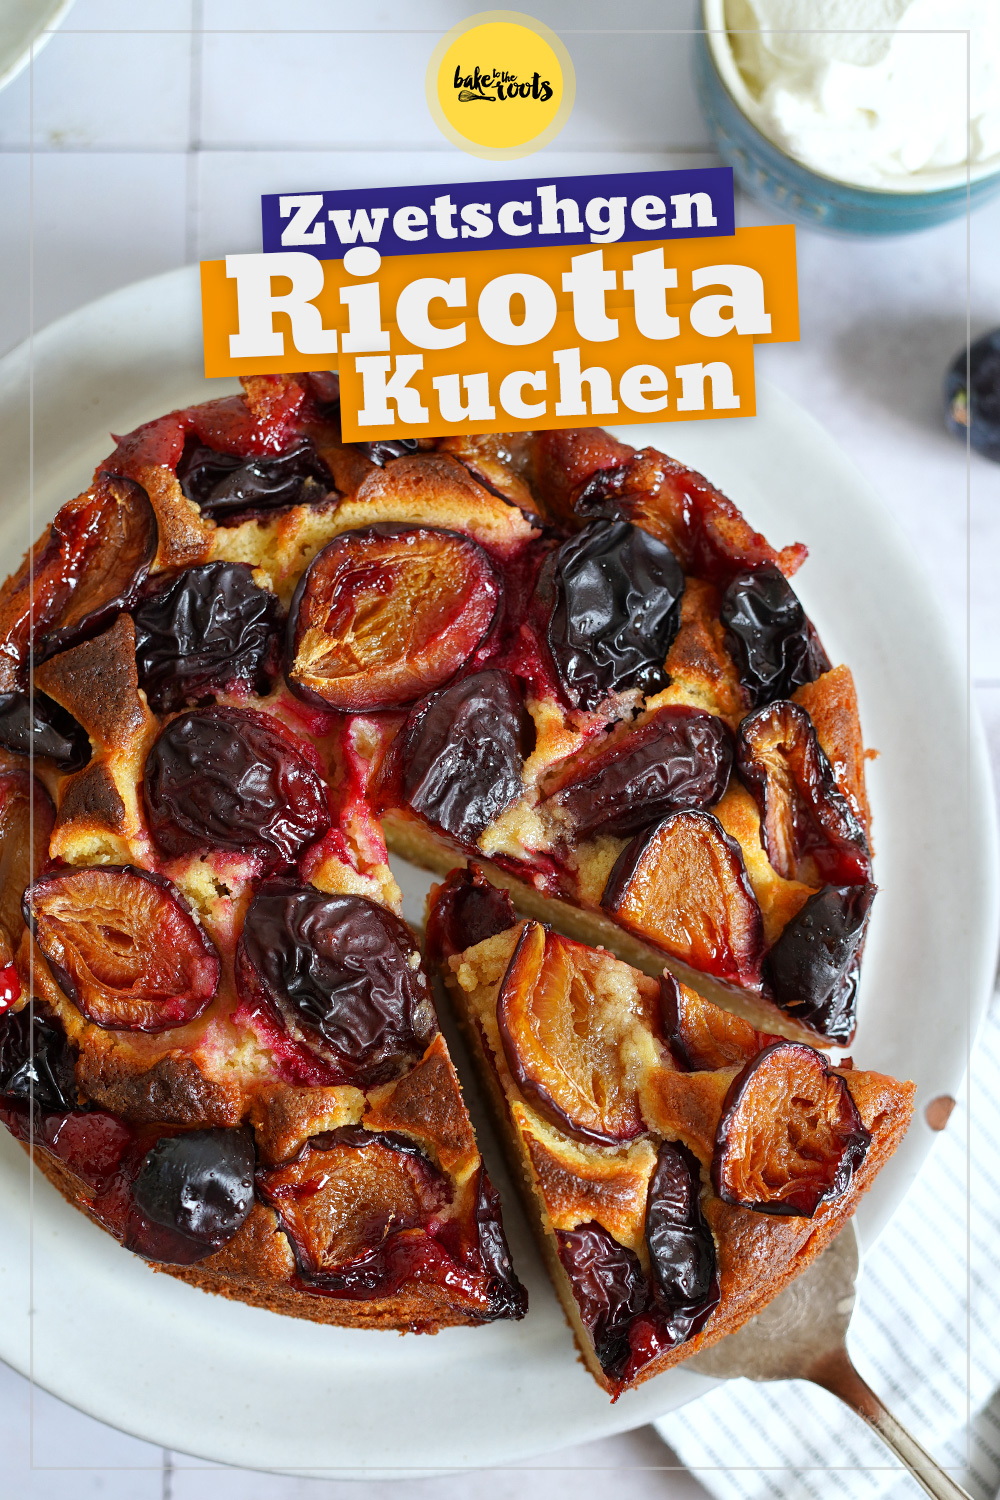 Ricotta Kuchen mit Zwetschgen | Bake to the roots